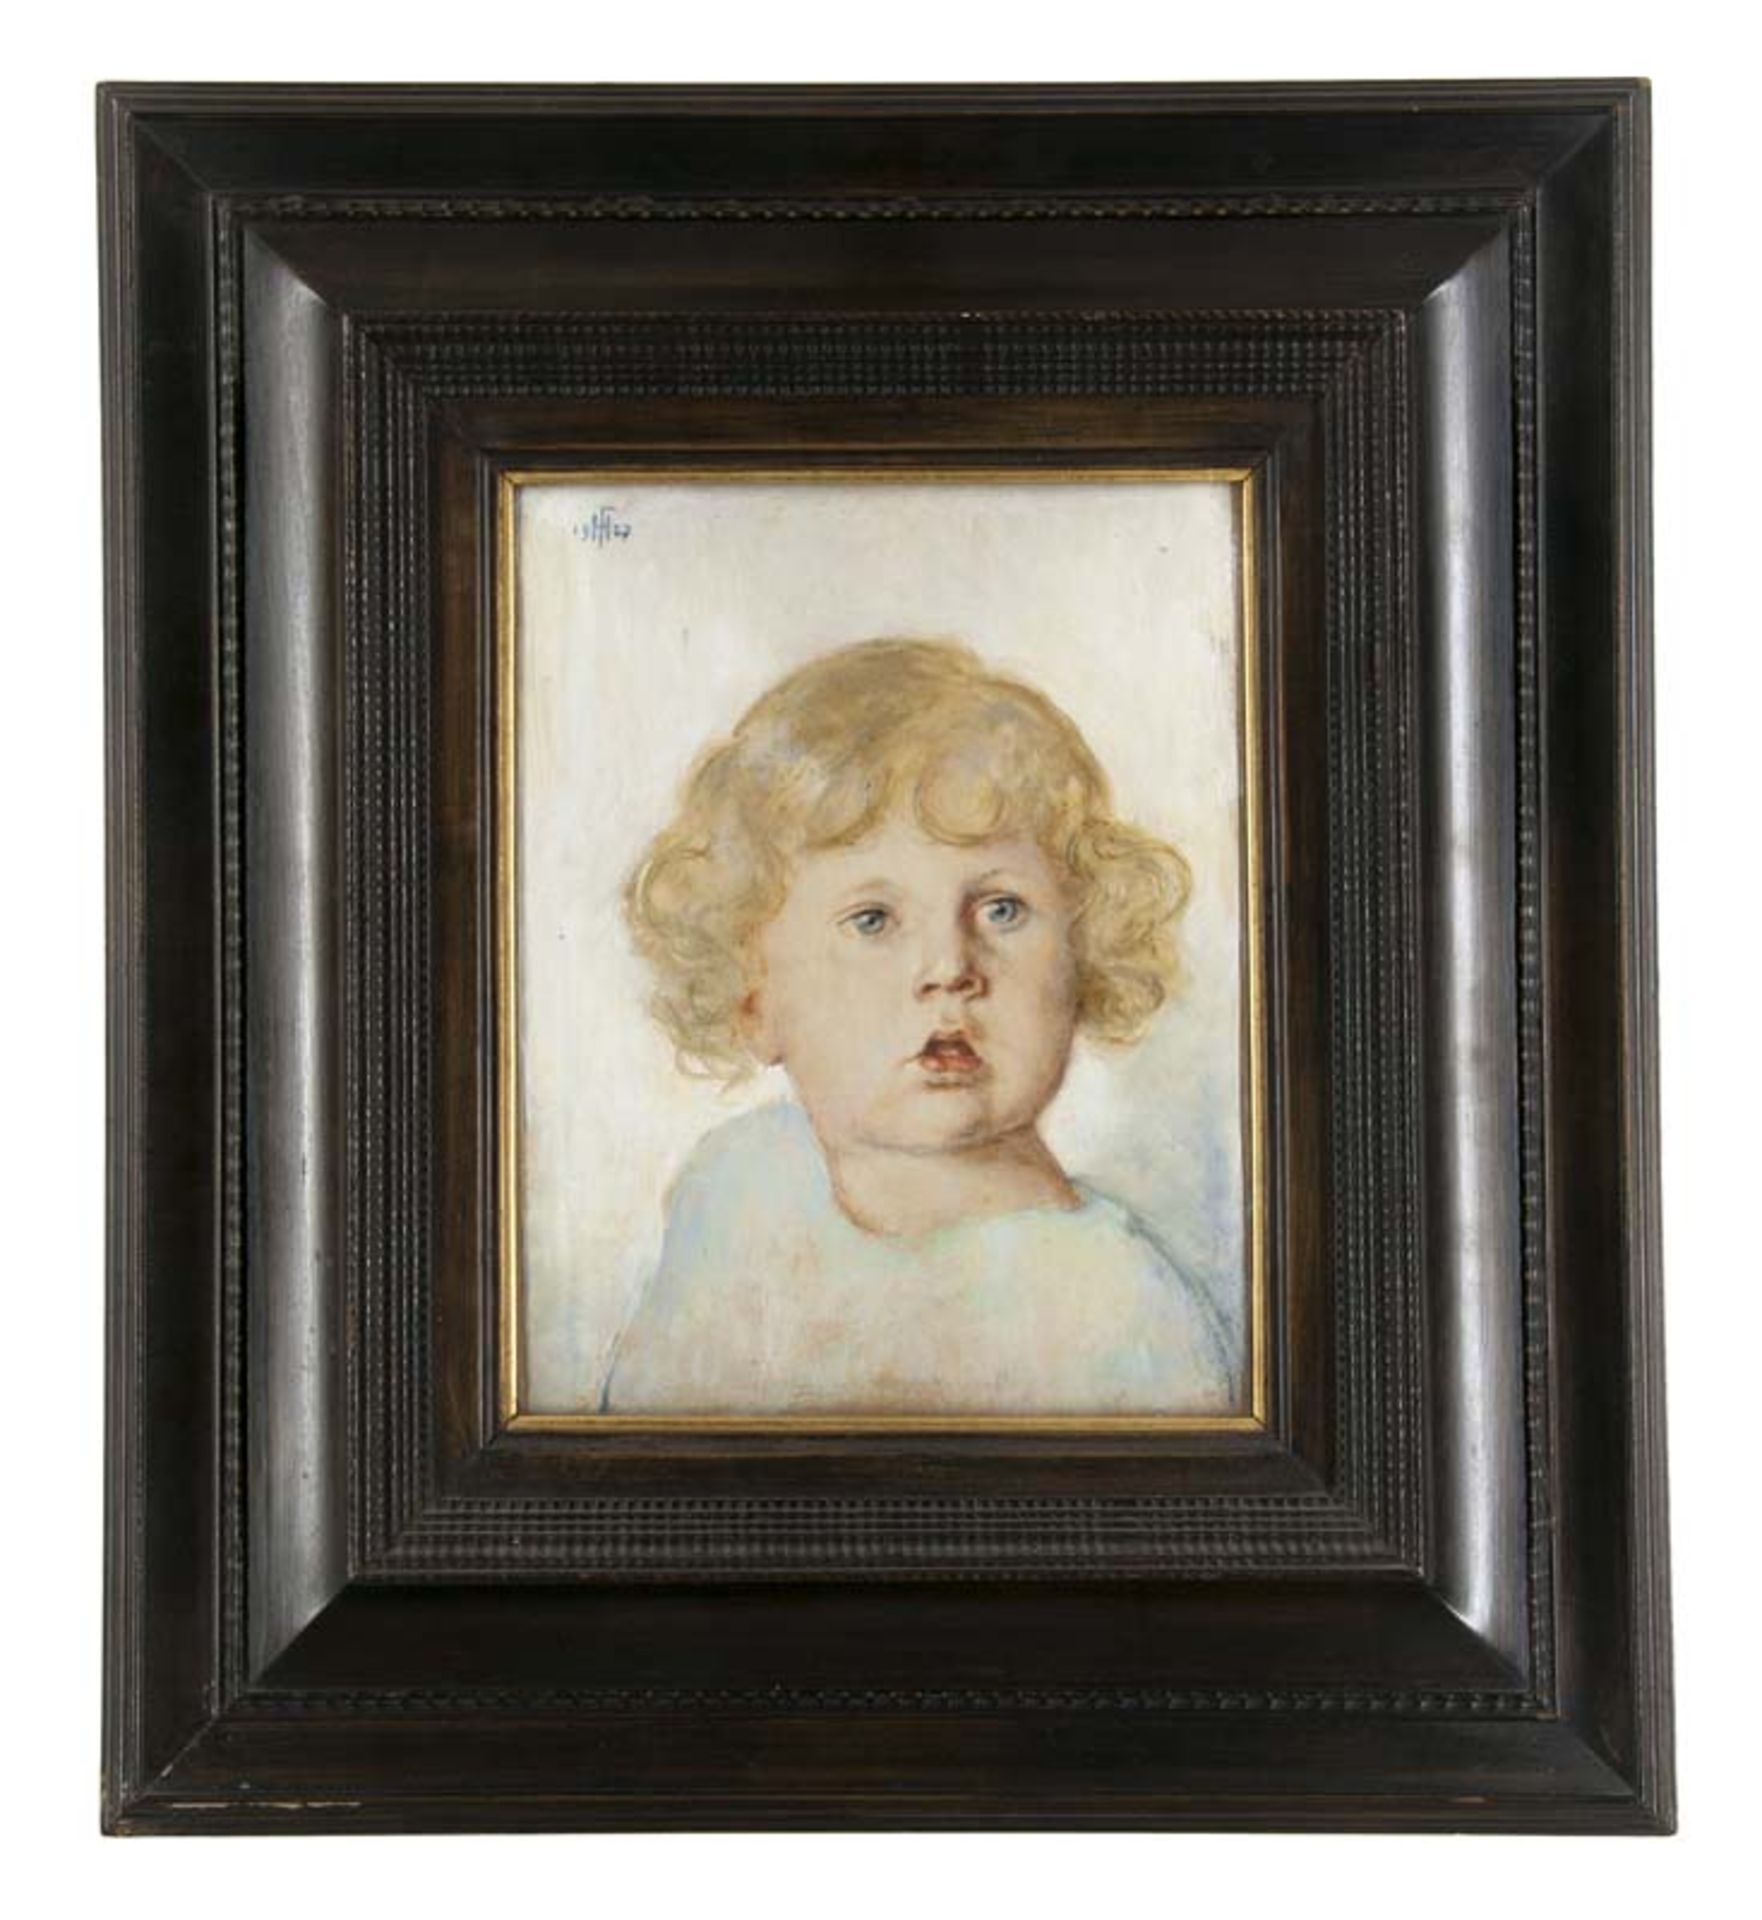 Flüggen, Hans. (1875 München - 1942 Riedering). Kinderportrait. 1927. Öl auf Leinwand. 20 x 25 cm.